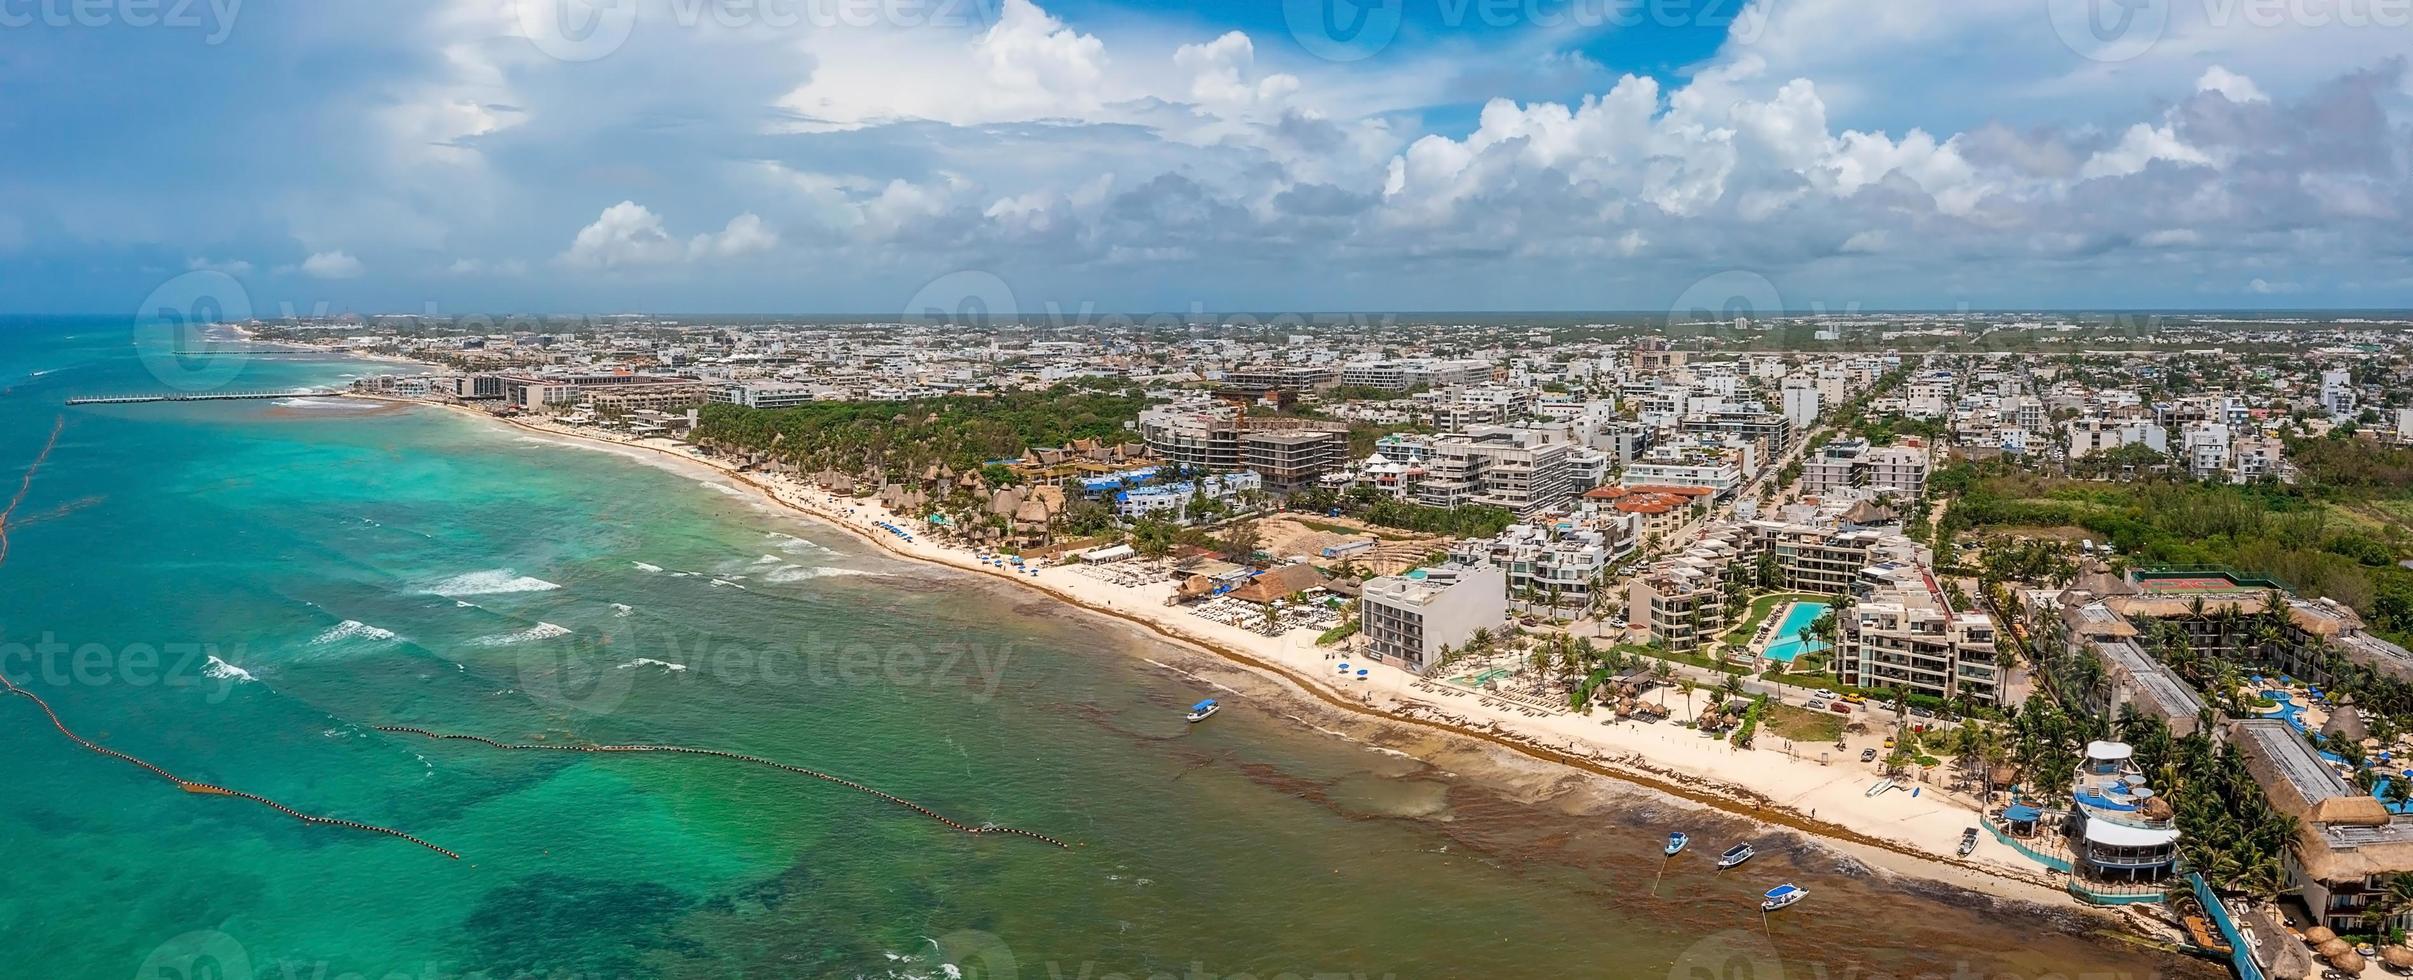 vista aérea de la ciudad de playa del carmen en méxico. foto